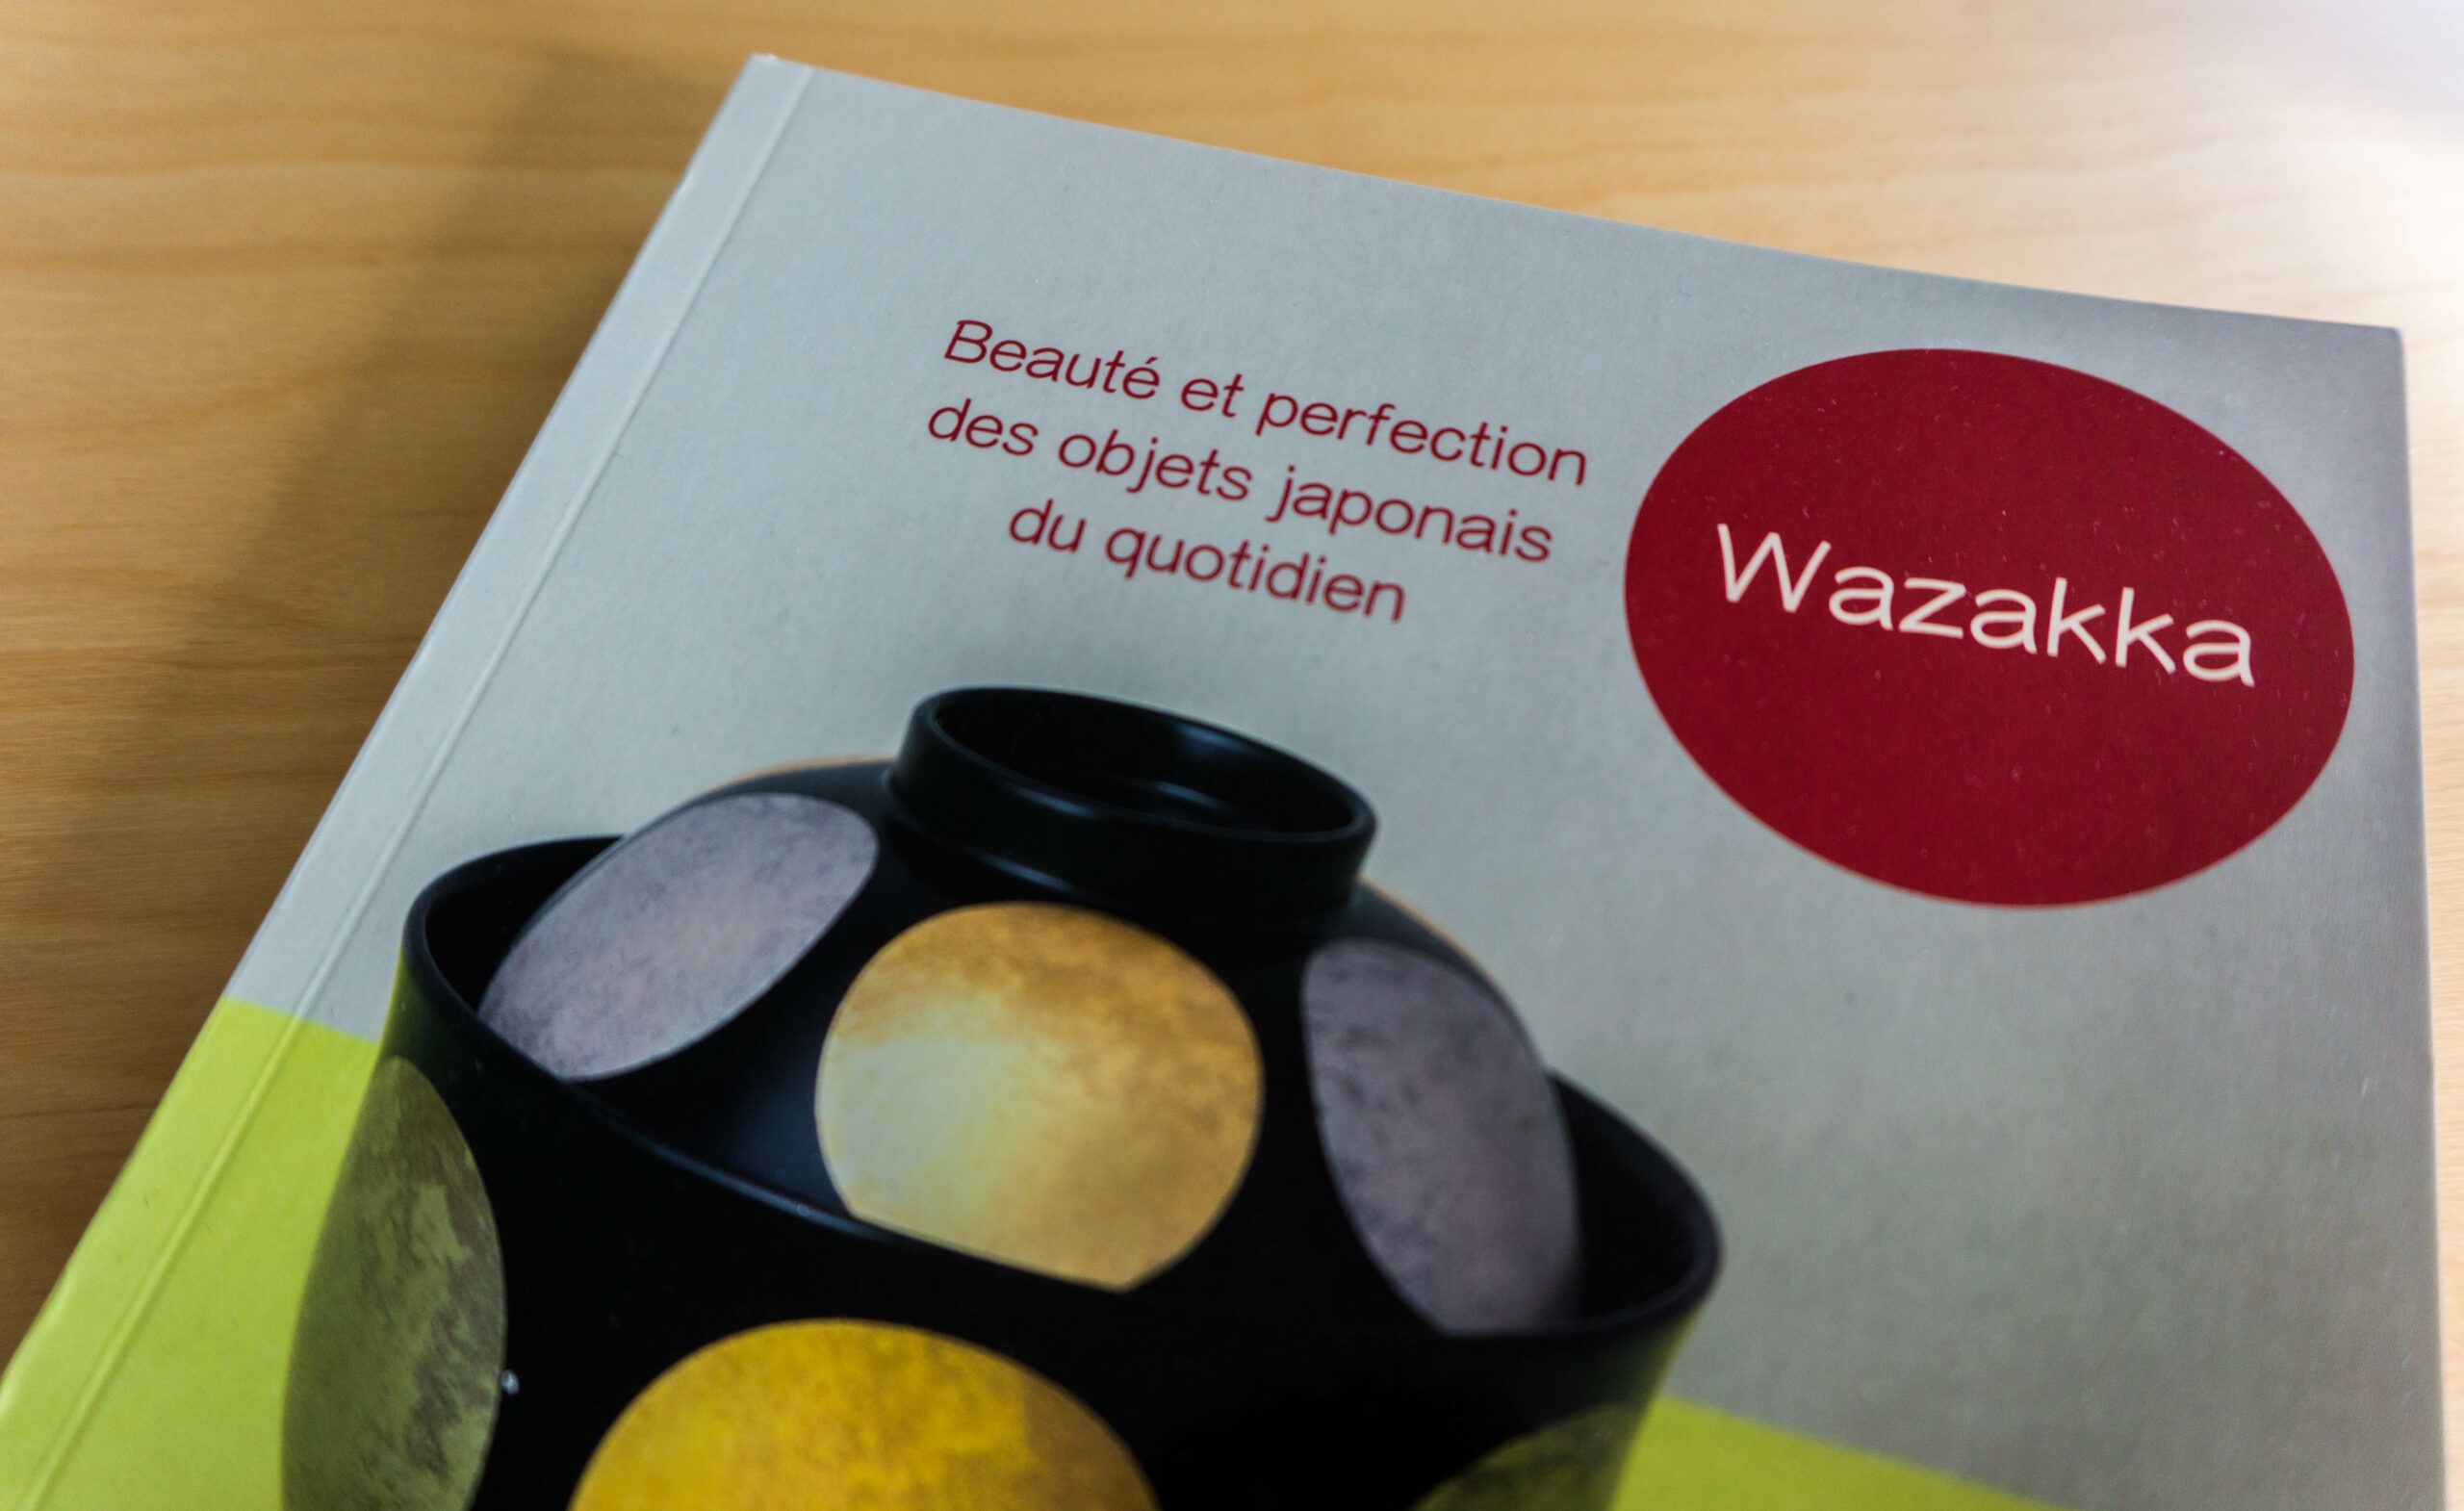 Wazakka, Beauté et perfection des objets japonais du quotidien